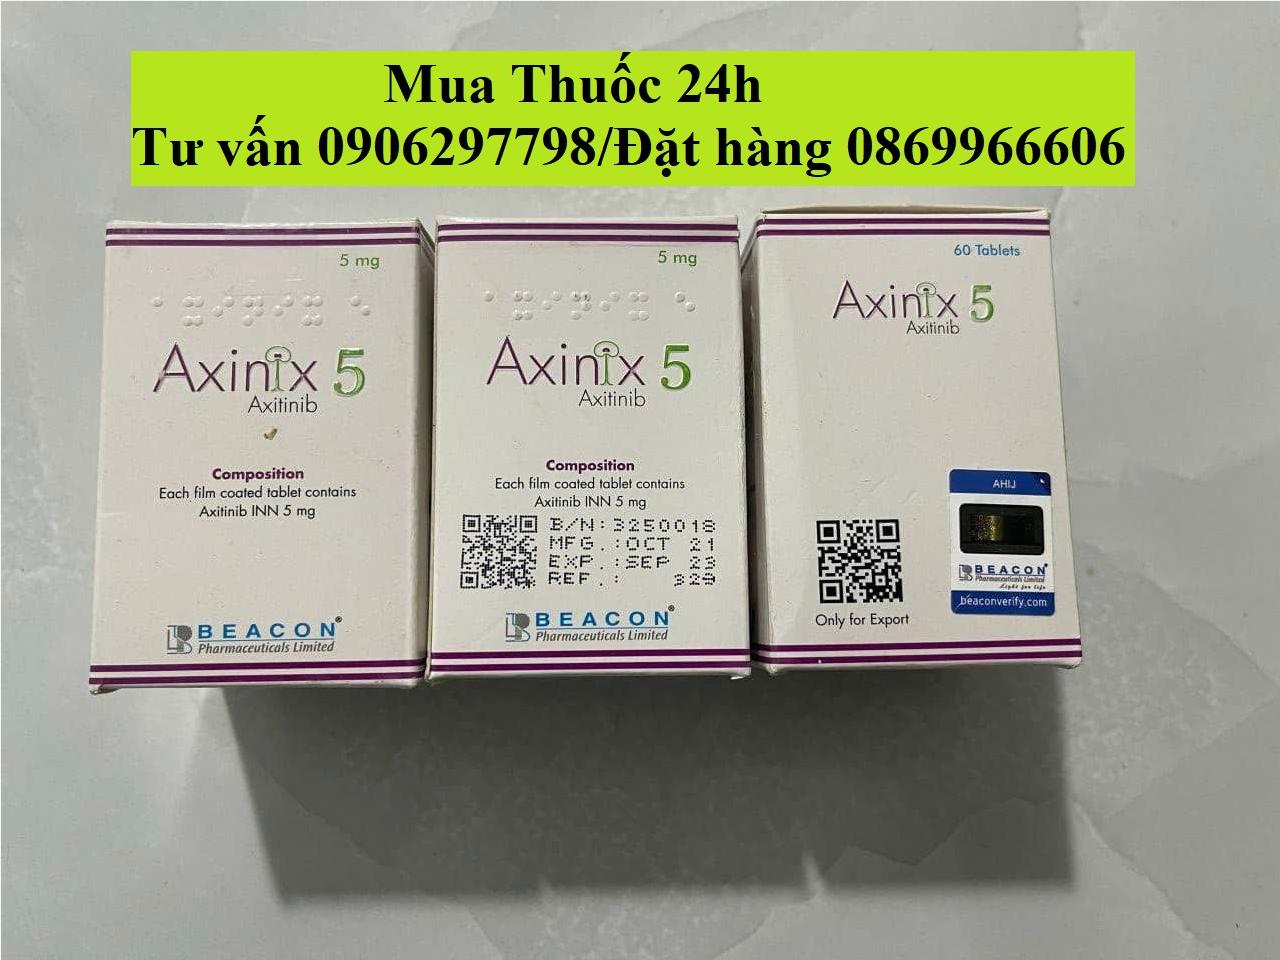 Thuốc Axinix 5 Axitinib 5mg giá bao nhiêu mua ở đâu?